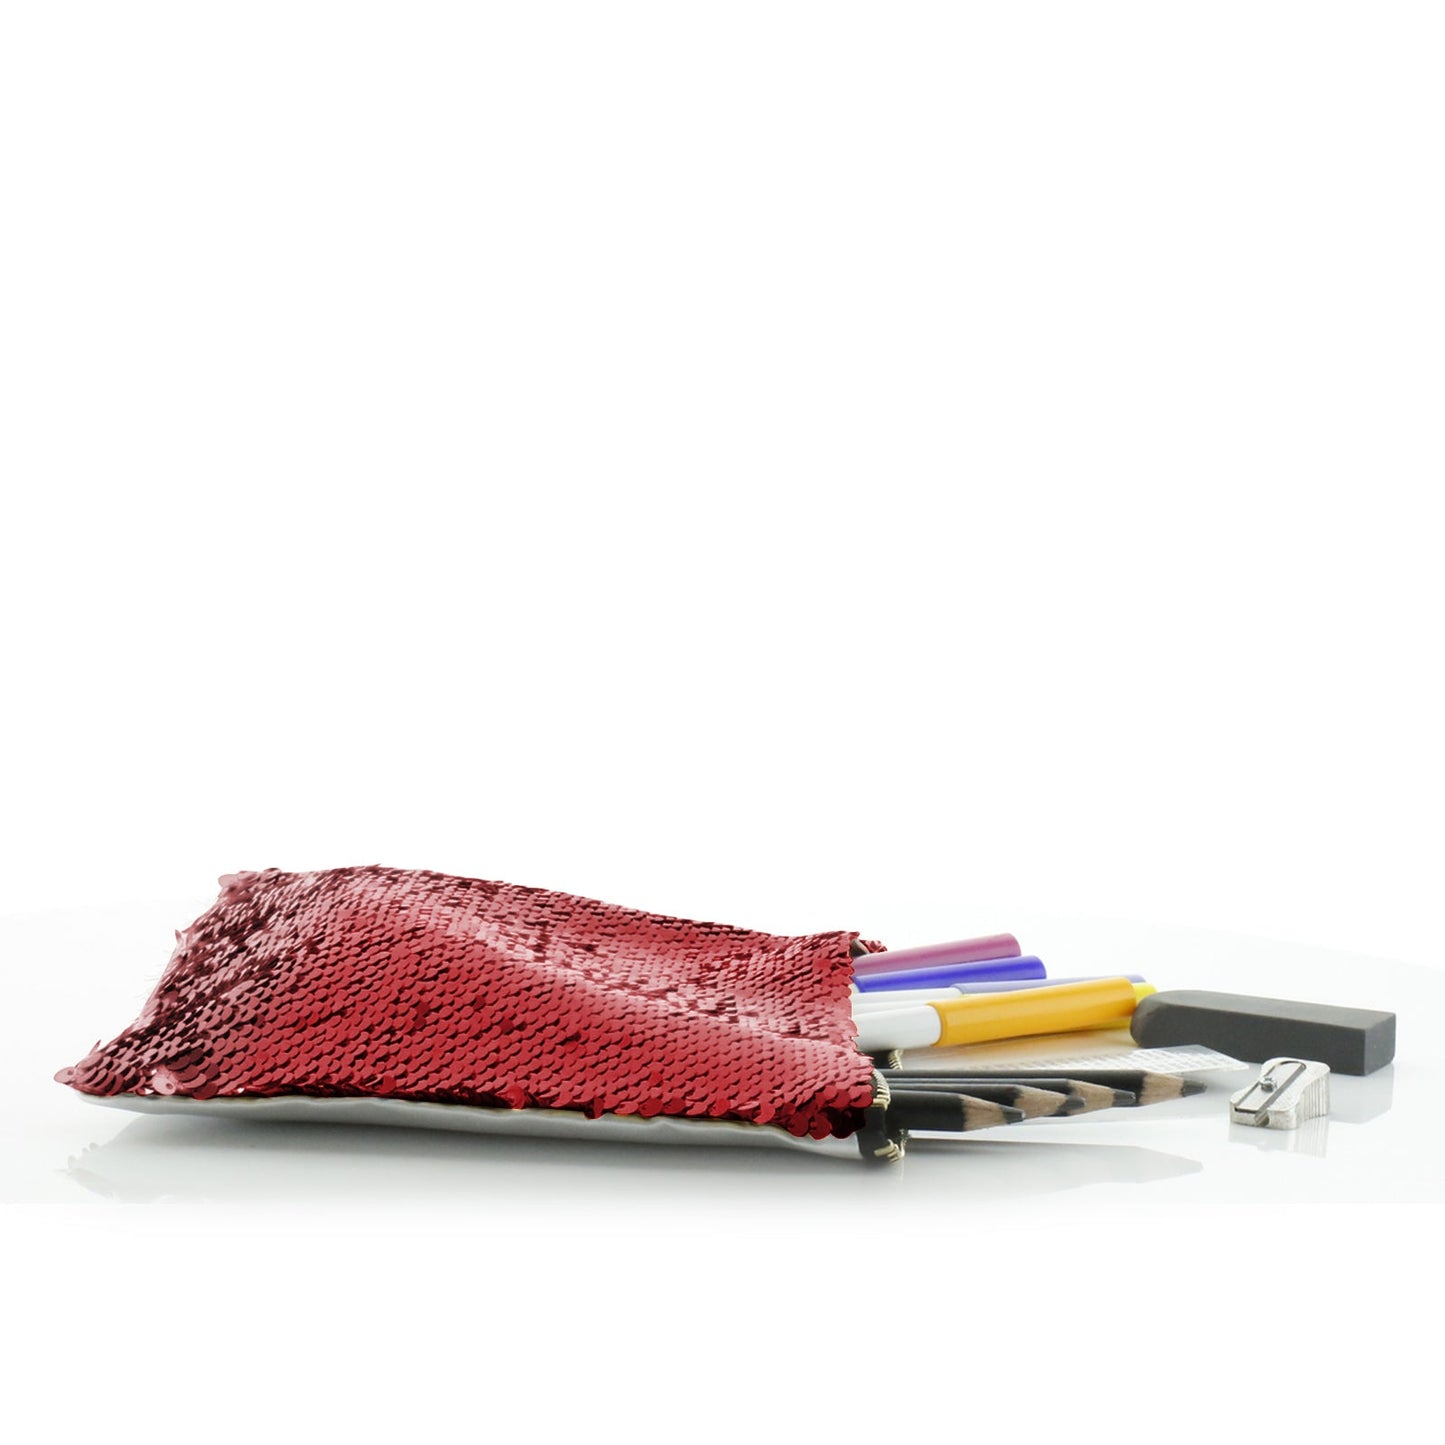 Personalisierte Pailletten-Reißverschlusstasche mit mehrfarbigem Blumenkranz aus braunem und weißem Alpaka-Motiv und niedlichem Text